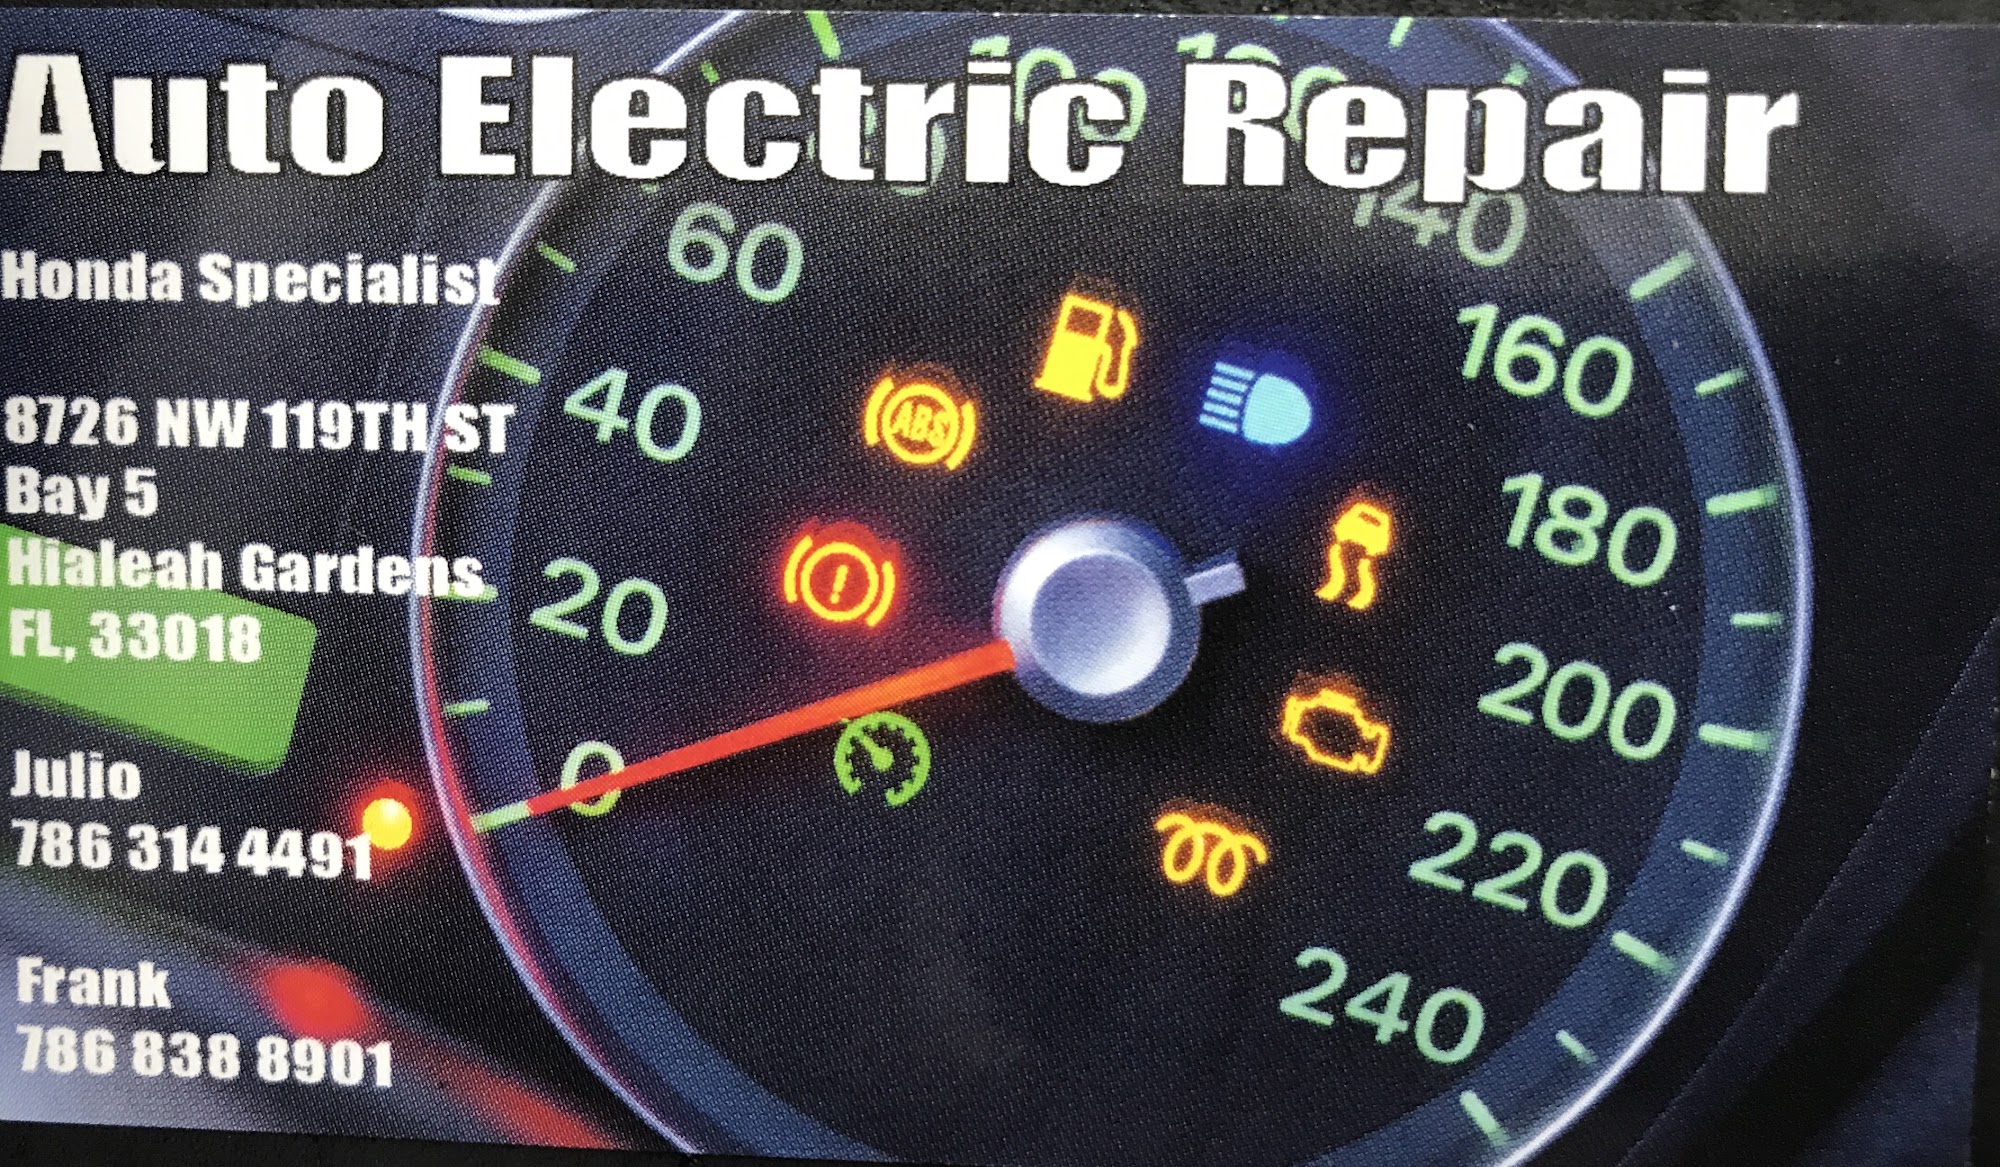 Auto Electric Repair